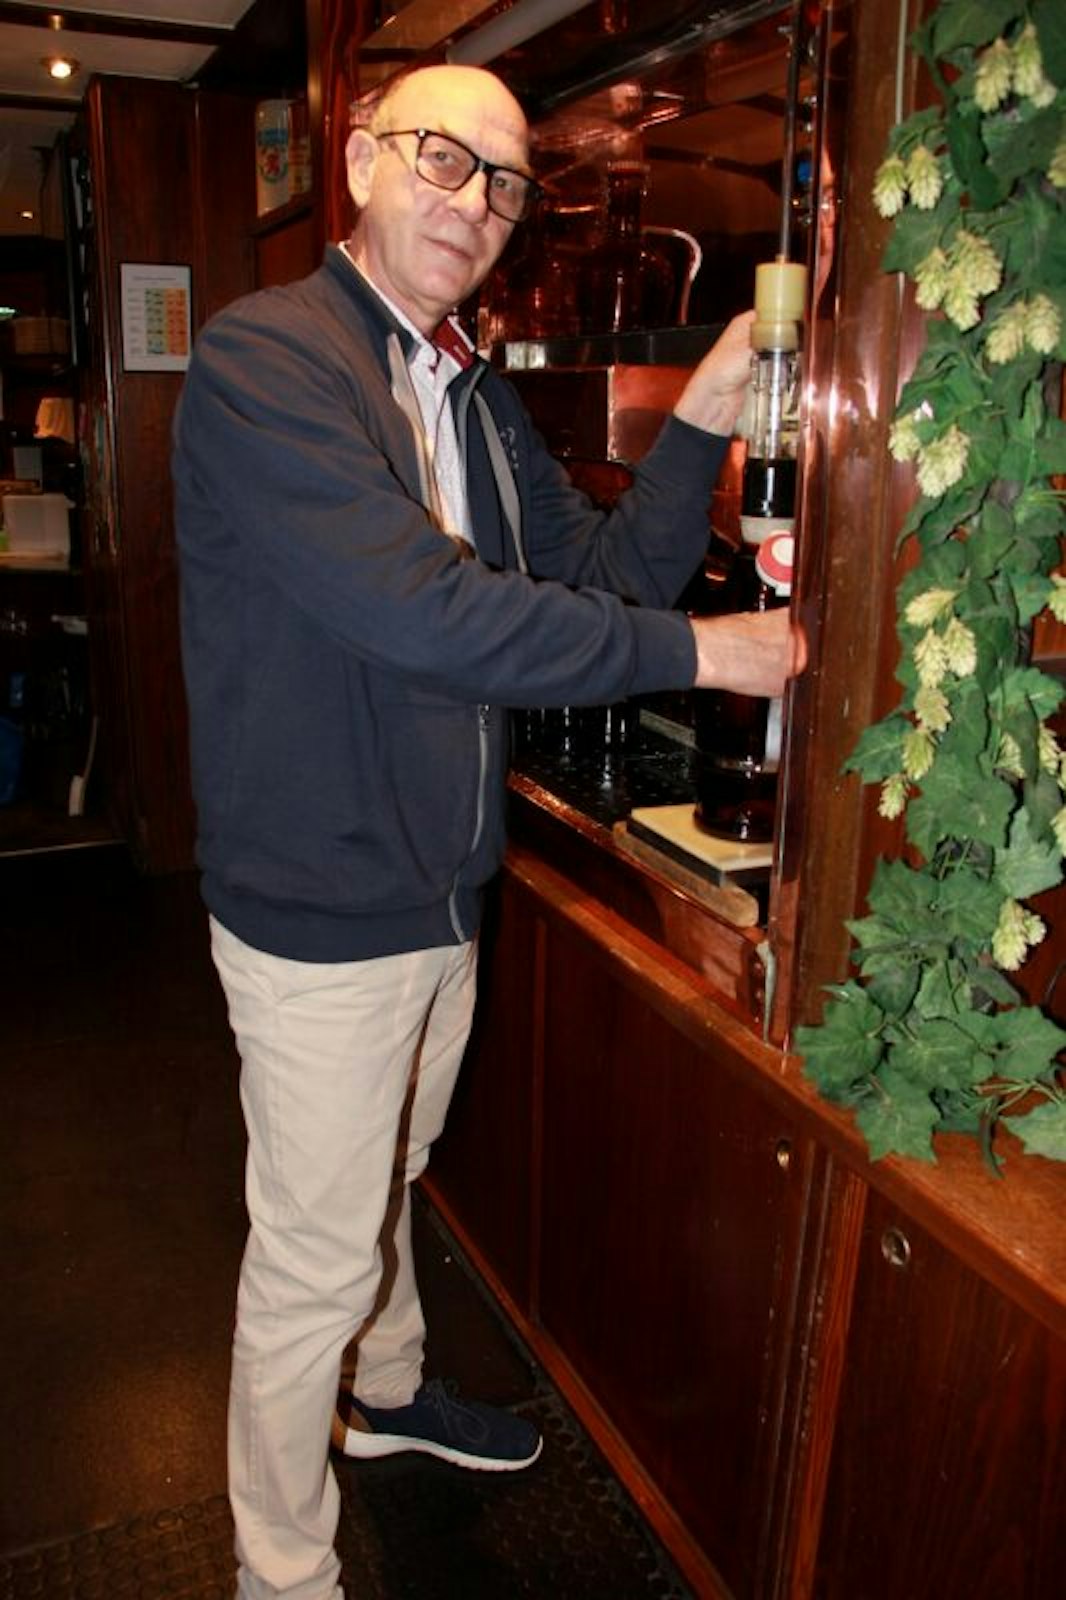 Betriebsleiter Wolfgang Köhler füllt das frische Bier in die Spezialflaschen ab, die am Eingang des Brauhauses in der Holzgasse freitags und samstags gekauft werden können.